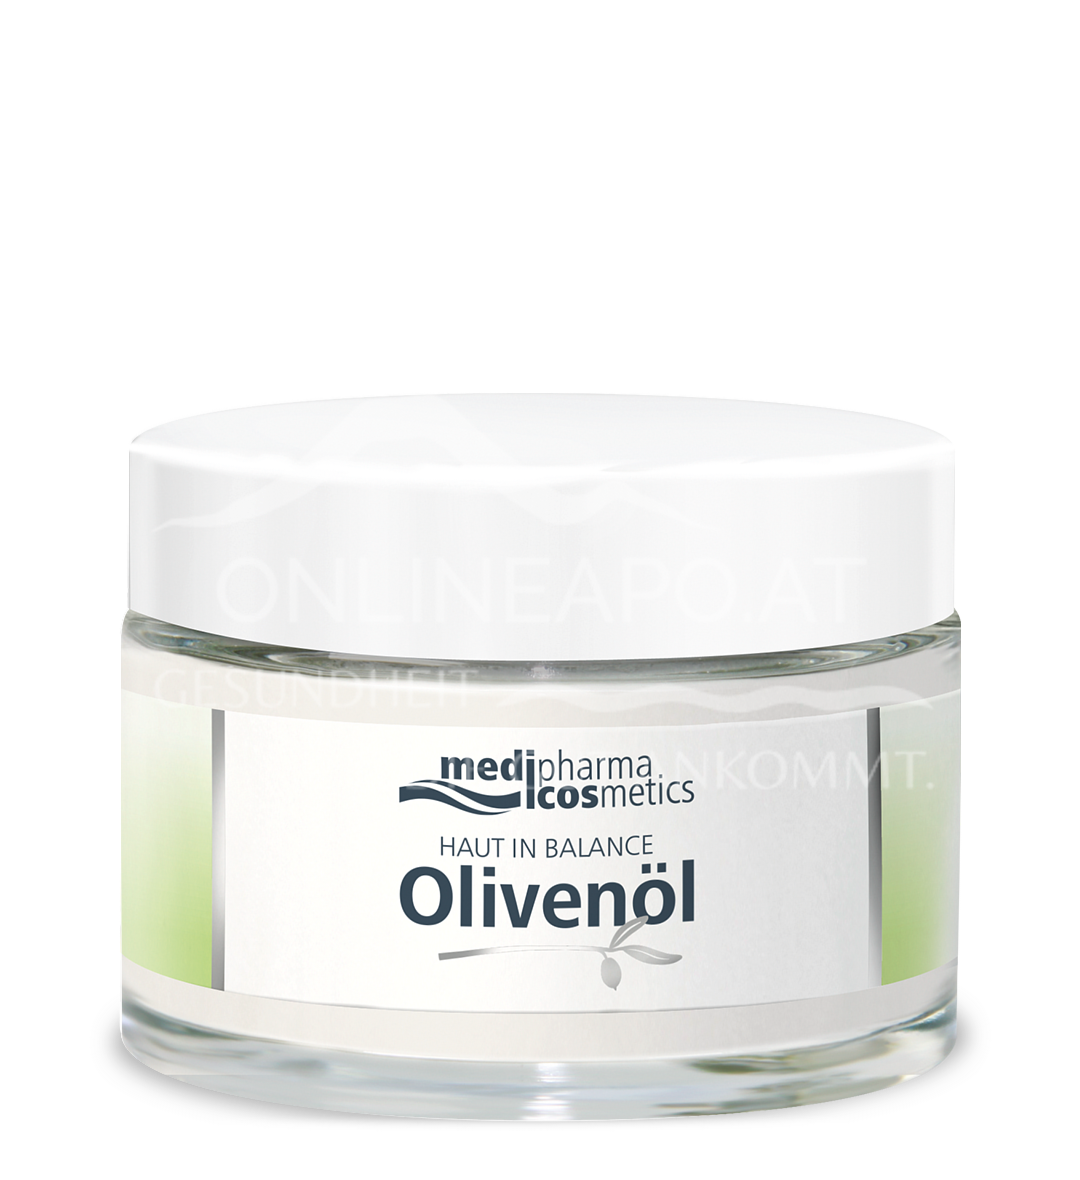 medipharma cosmetics Haut in Balance Olivenöl Dermatologische Gesichtspflege